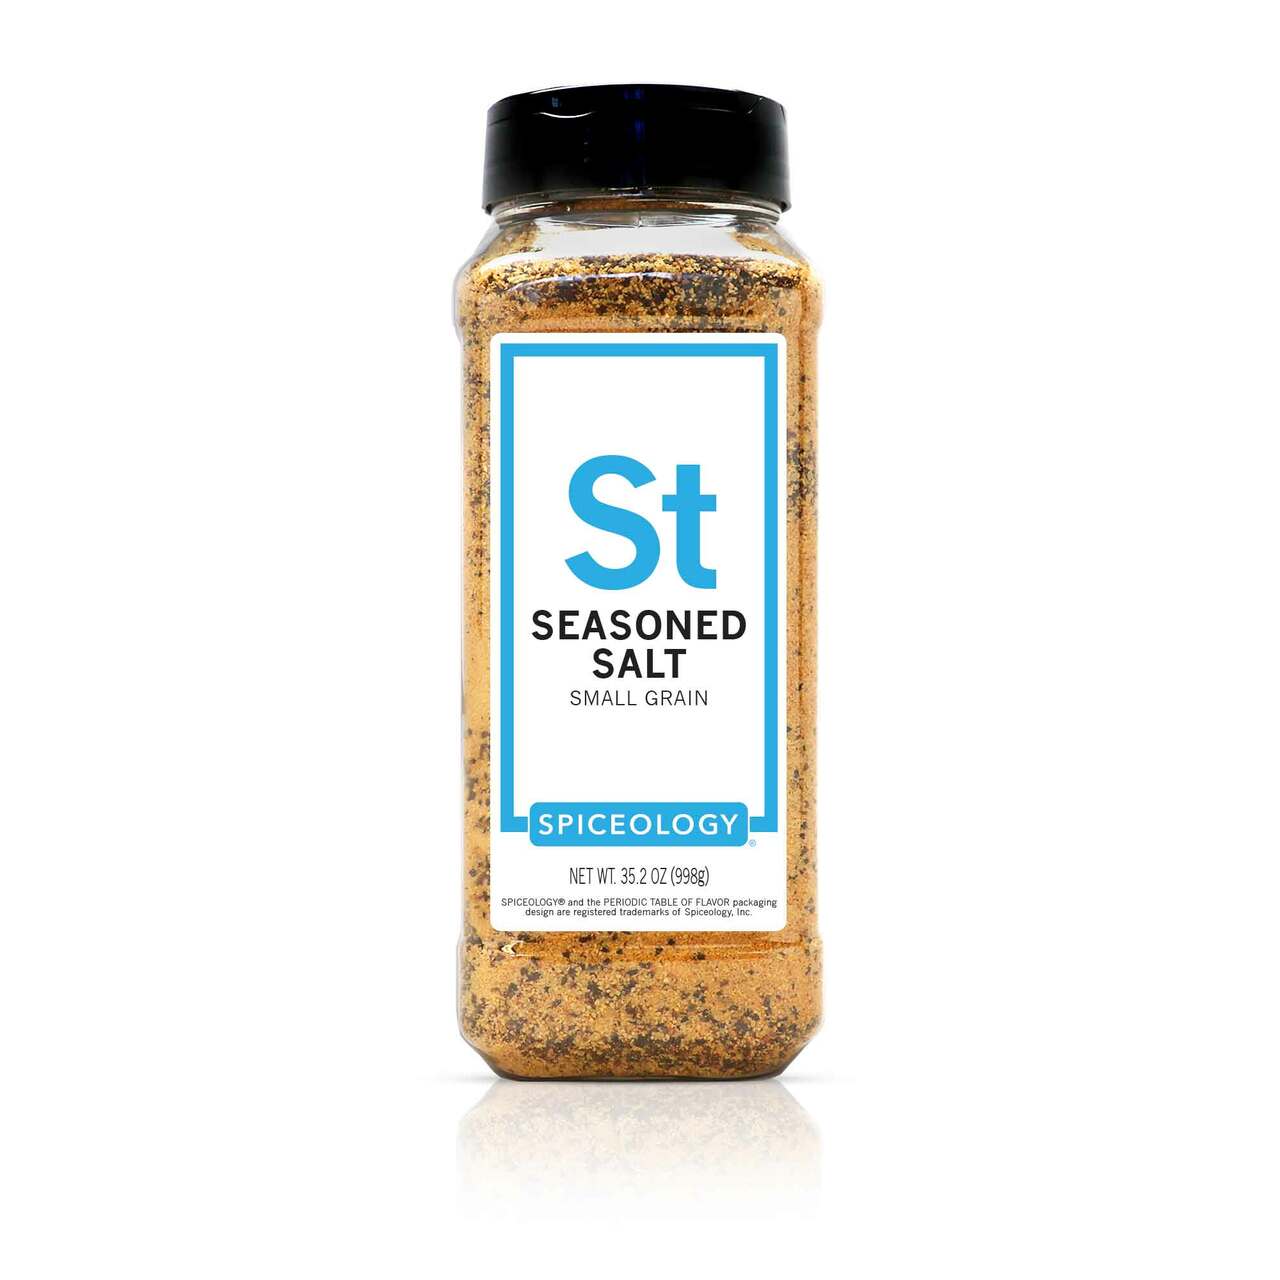 Lawry's Salt-Free 17 Seasoning - 10 oz jar